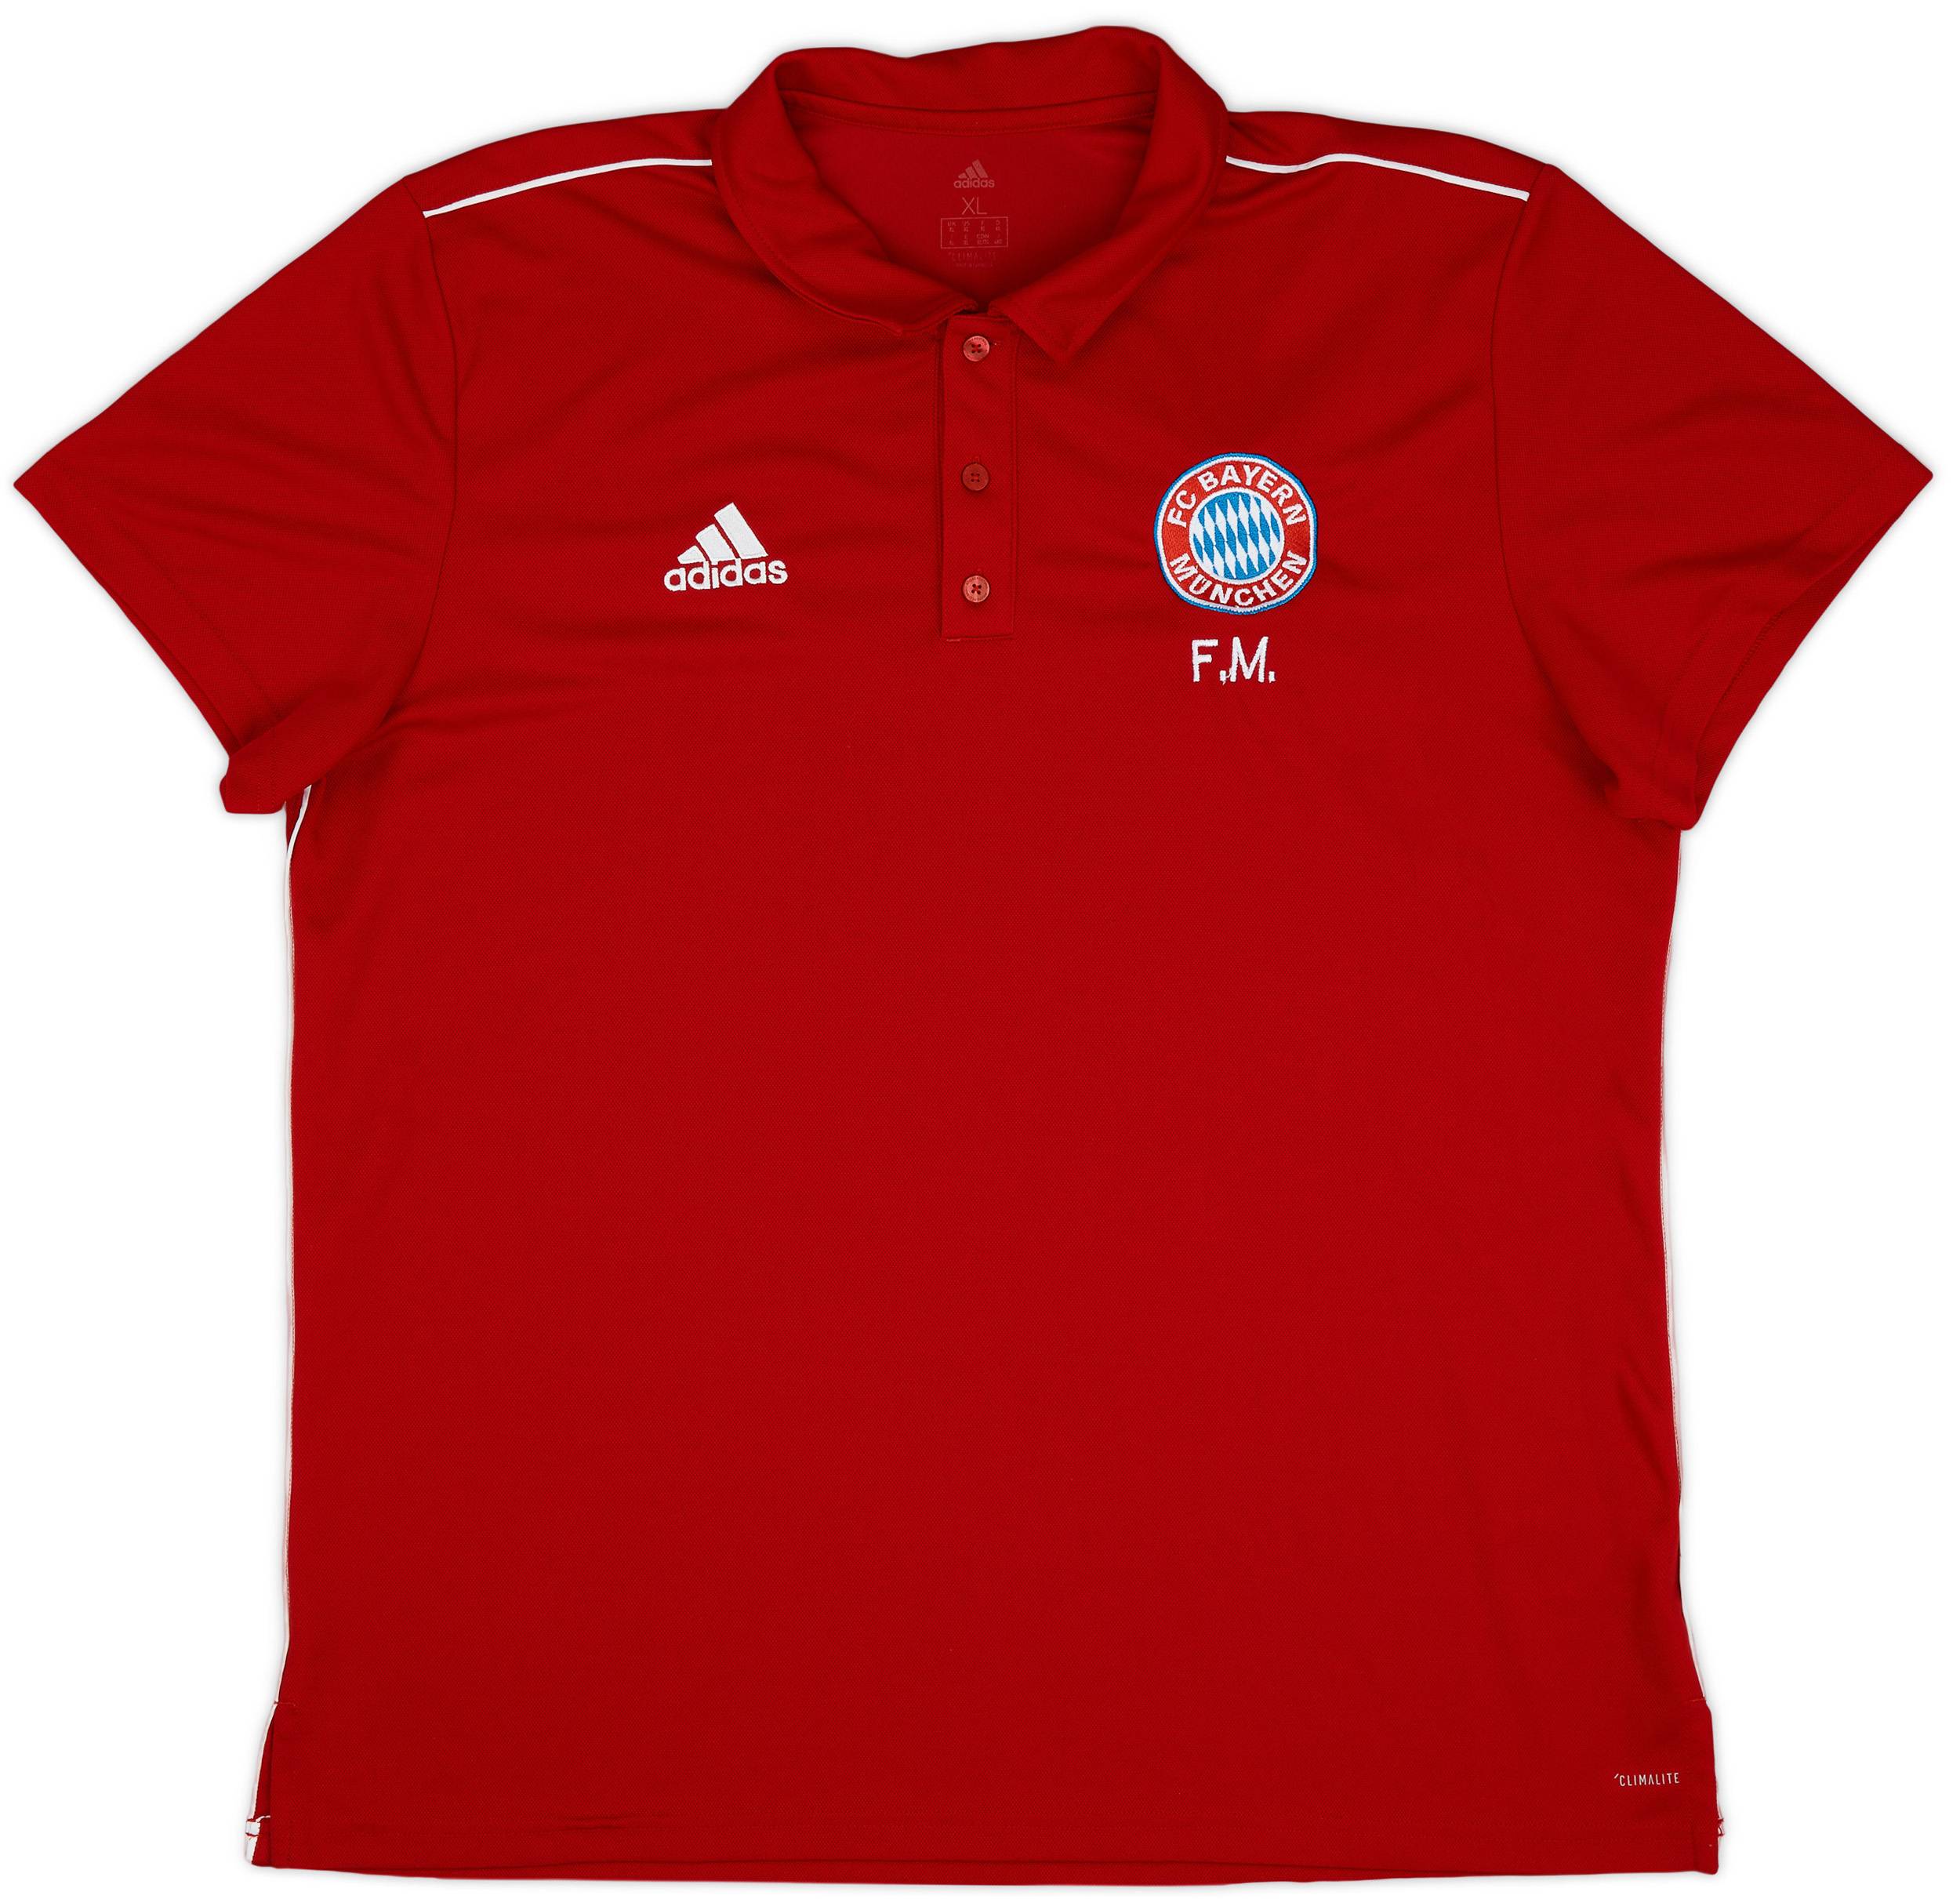 2018-19 Bayern Munich Staff Issue adidas Polo Shirt 'F.M' - 9/10 - (XL)